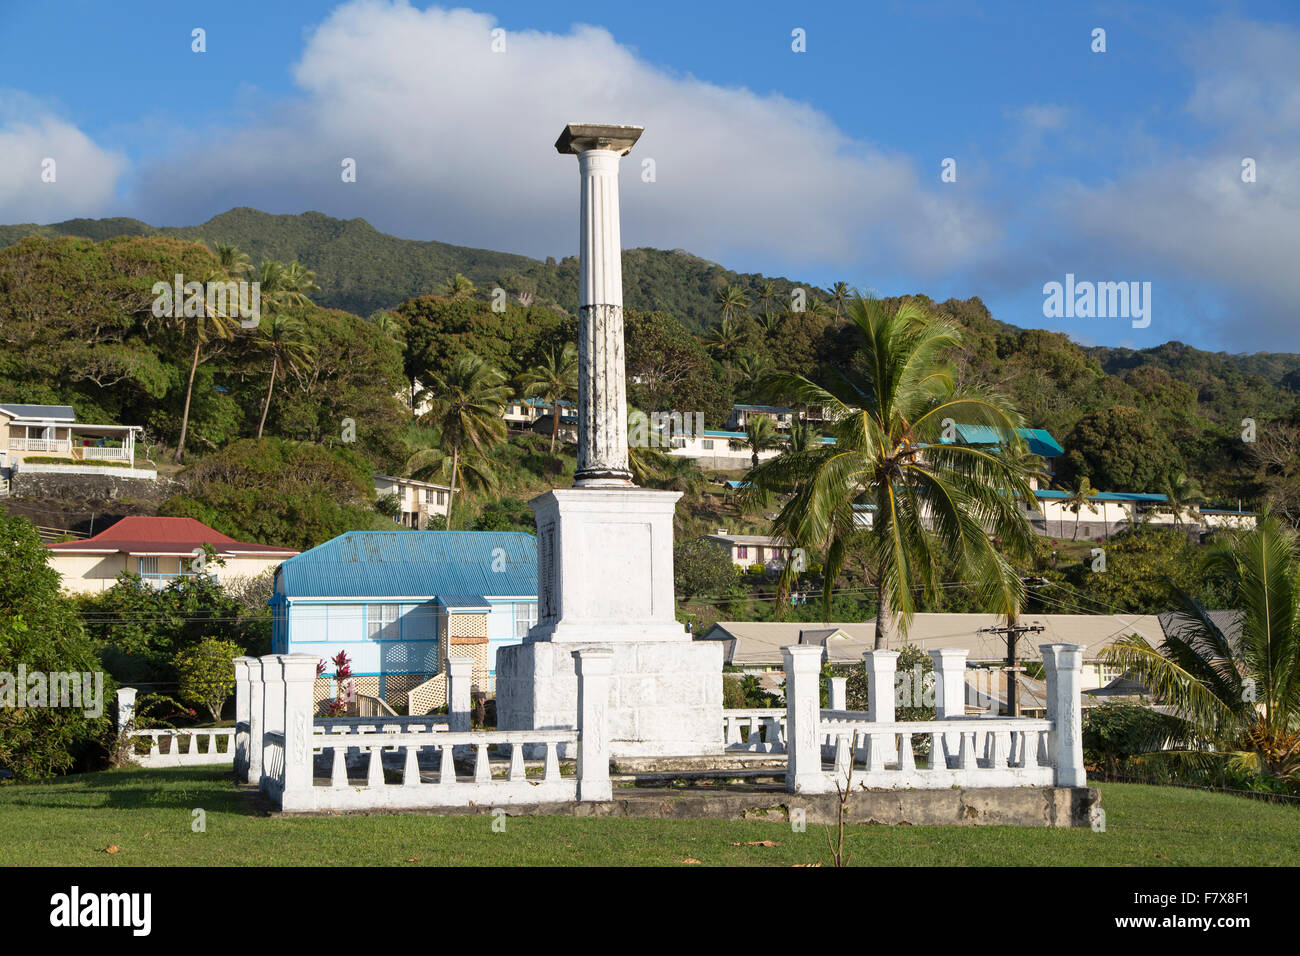 European war memorial, Levuka (UNESCO World Heritage Site), Ovalau, Fiji Stock Photo